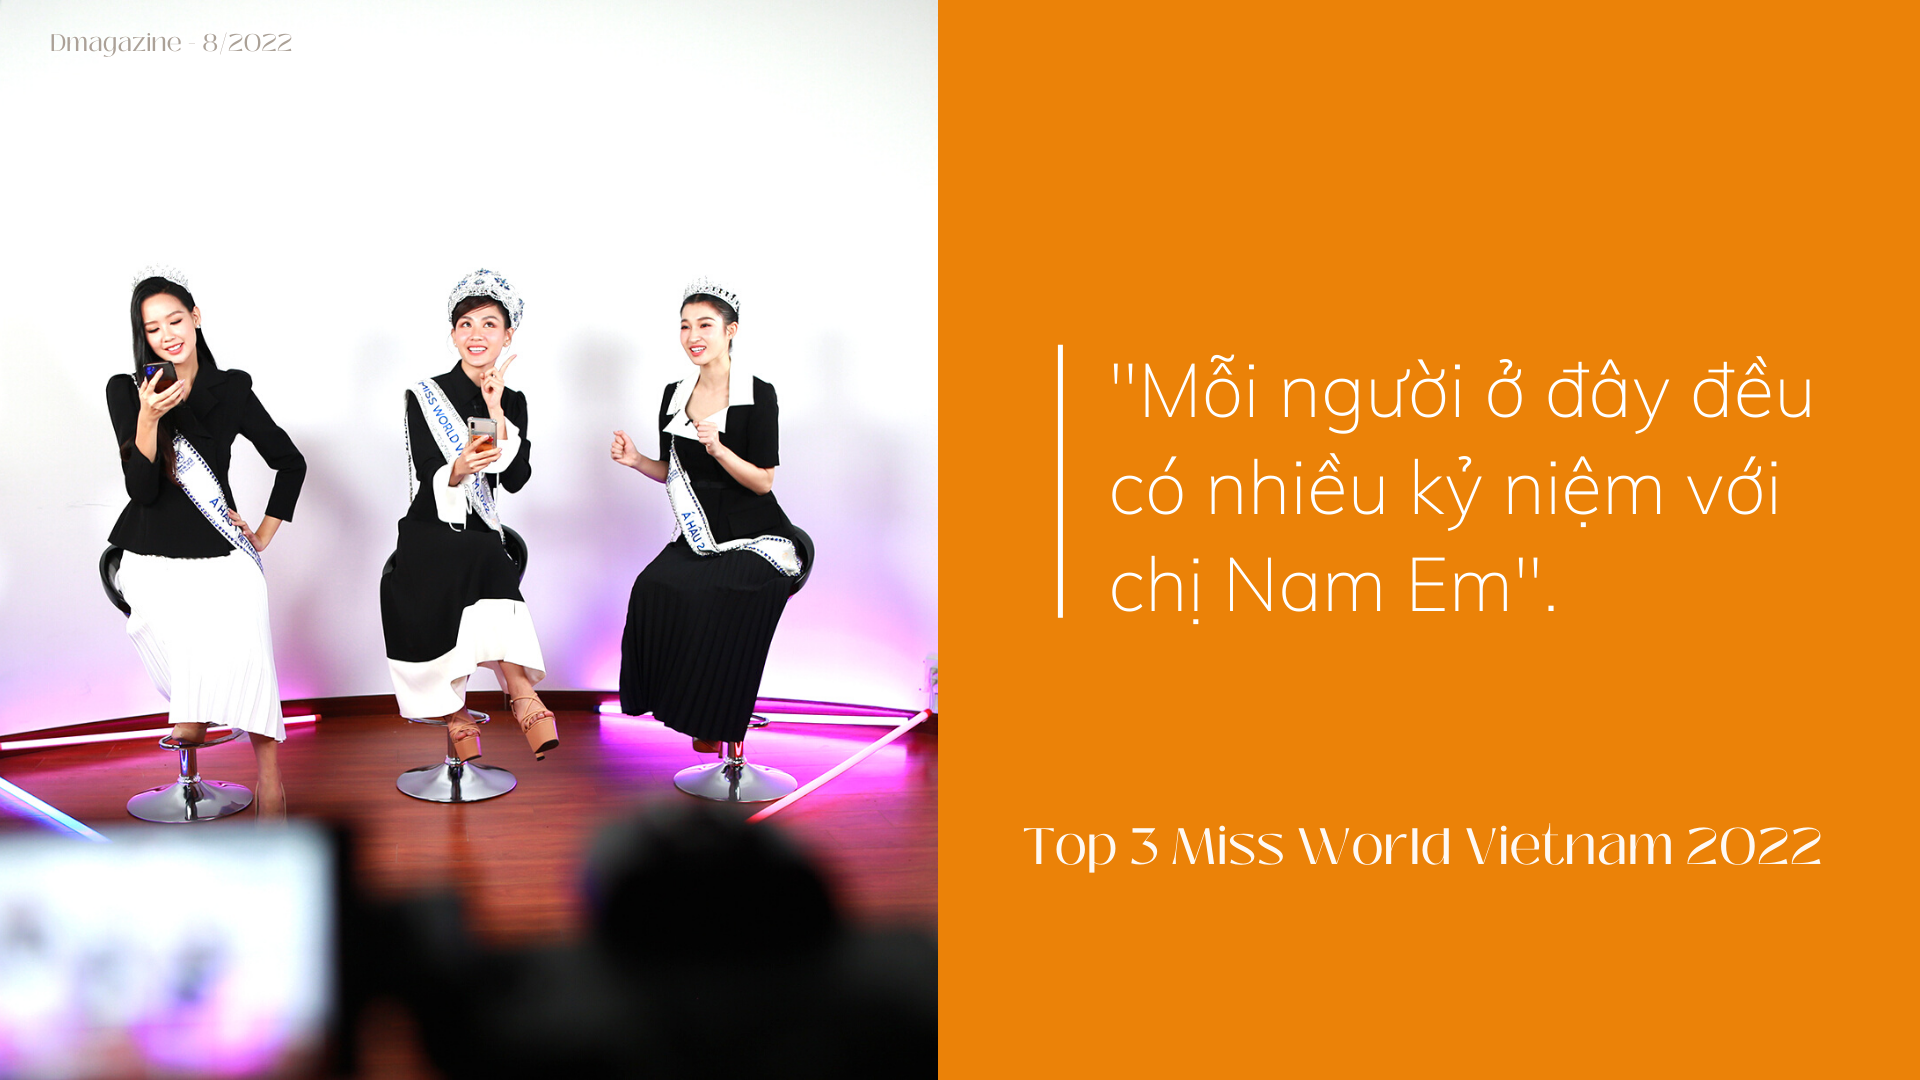 Top 3 Miss World Vietnam hé lộ gu bạn trai, nói gì về sự cố rơi vương miện? - 2